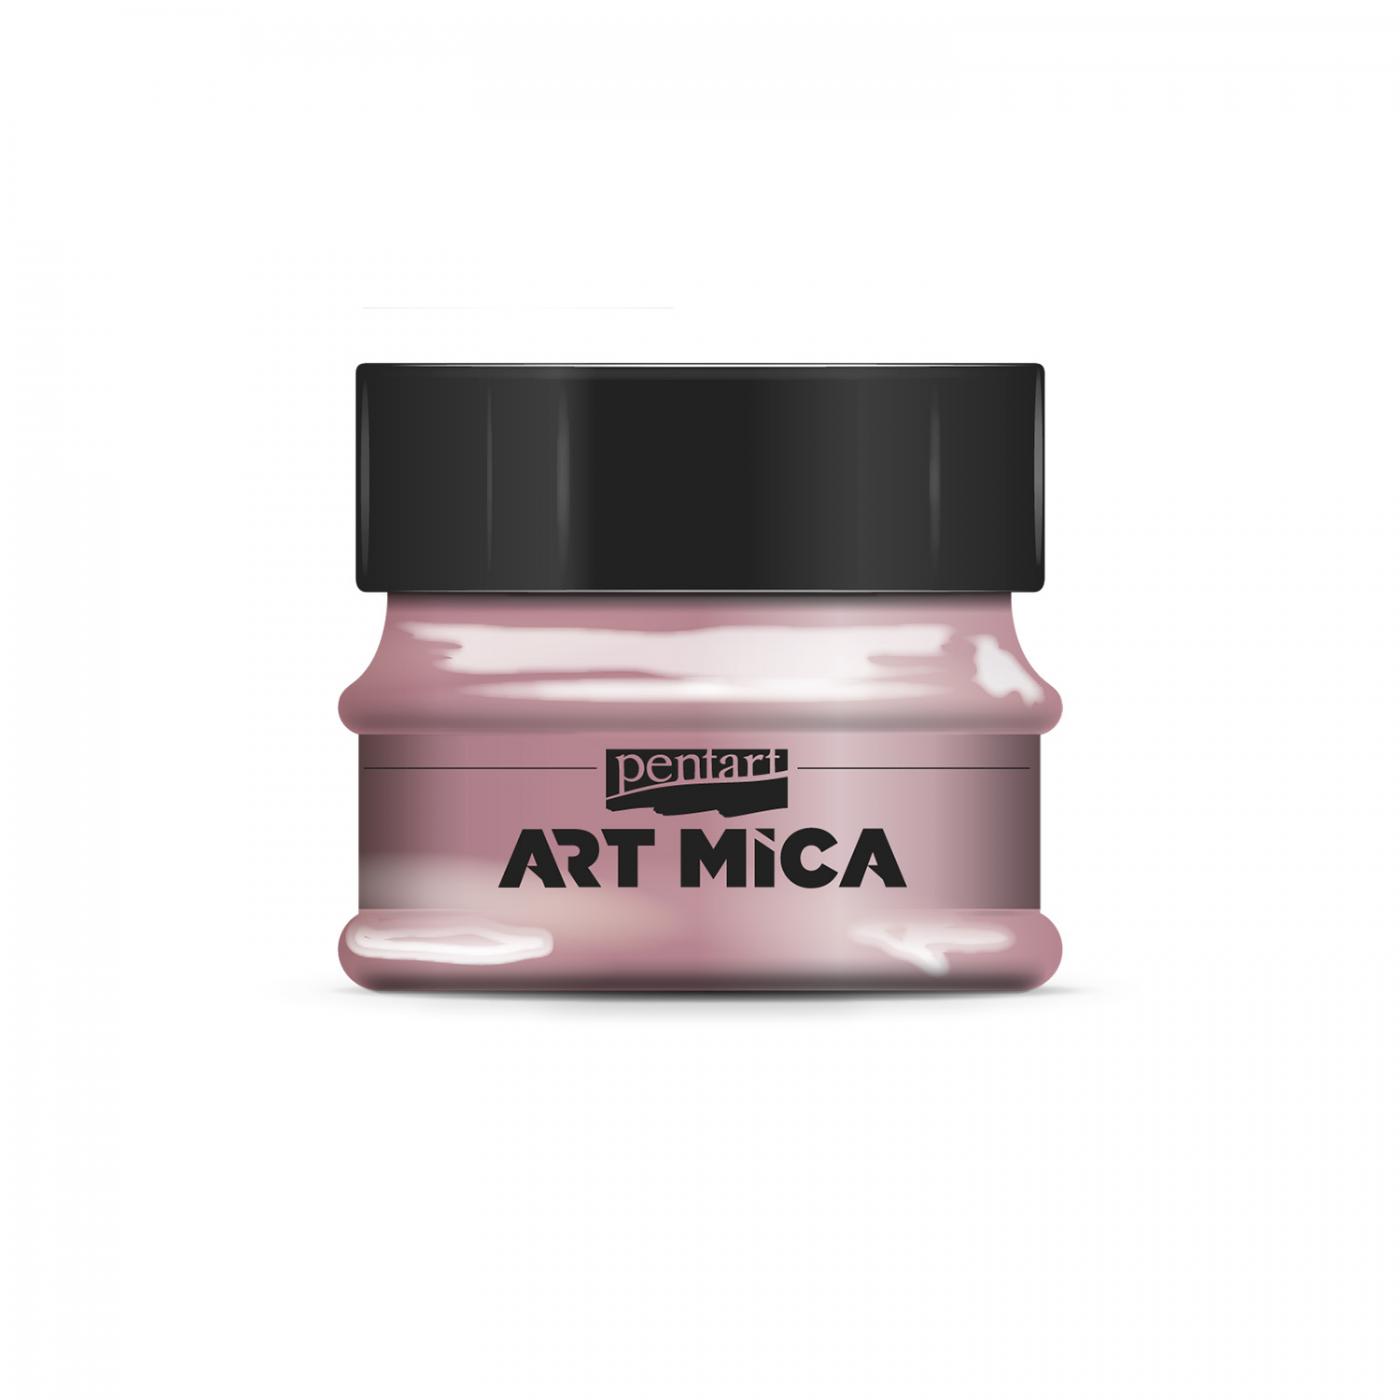 ART MICA minerálny práškový pigment, 9g, ružová